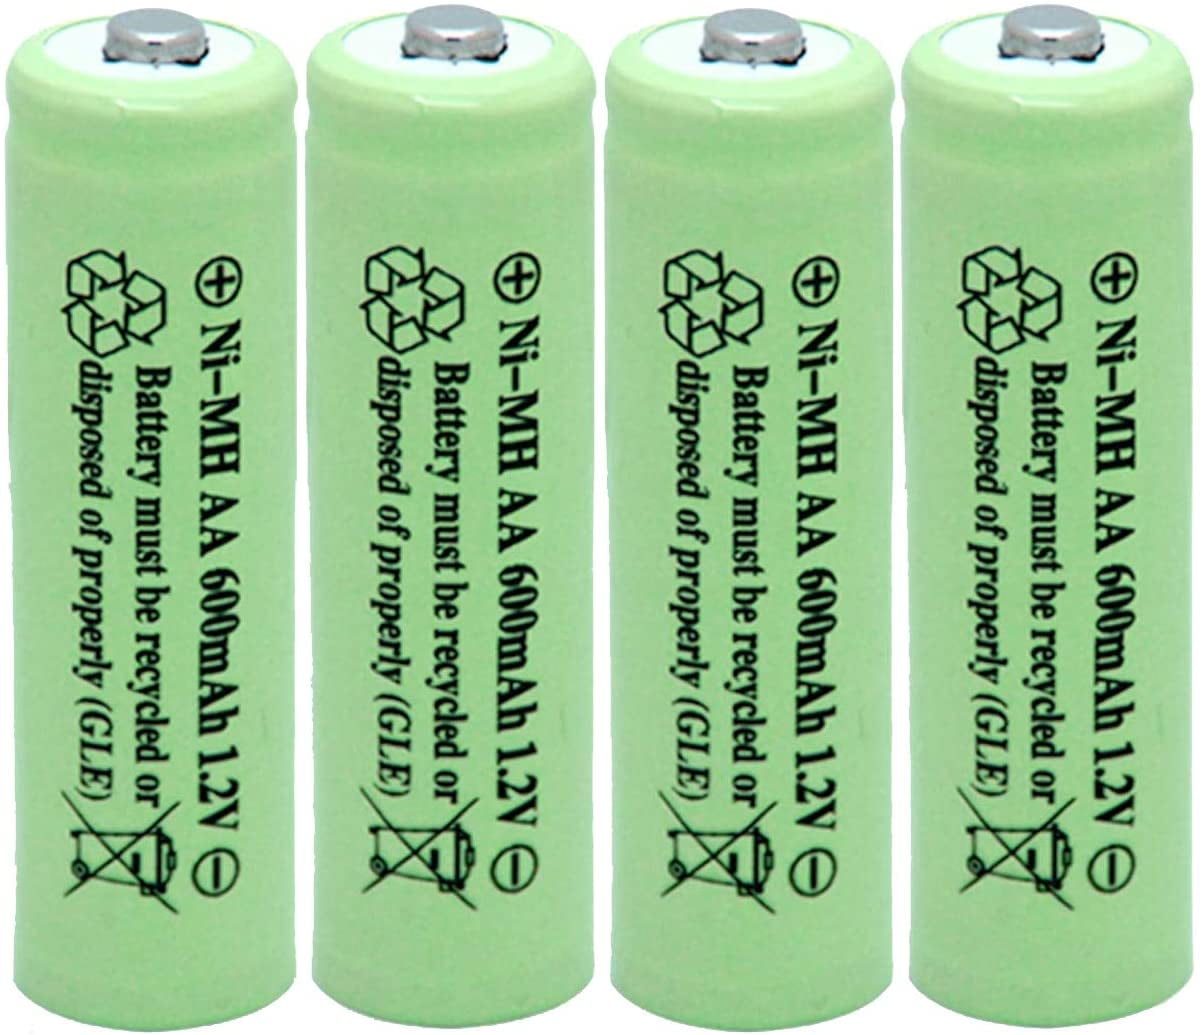 toilet knal ik lees een boek Green Garden 4 Pack AA Batteries Ni-MH 600mAh 1.2V Rechargeable Battery  Solar Powered Outdoor Lights (NiMH) - Walmart.com